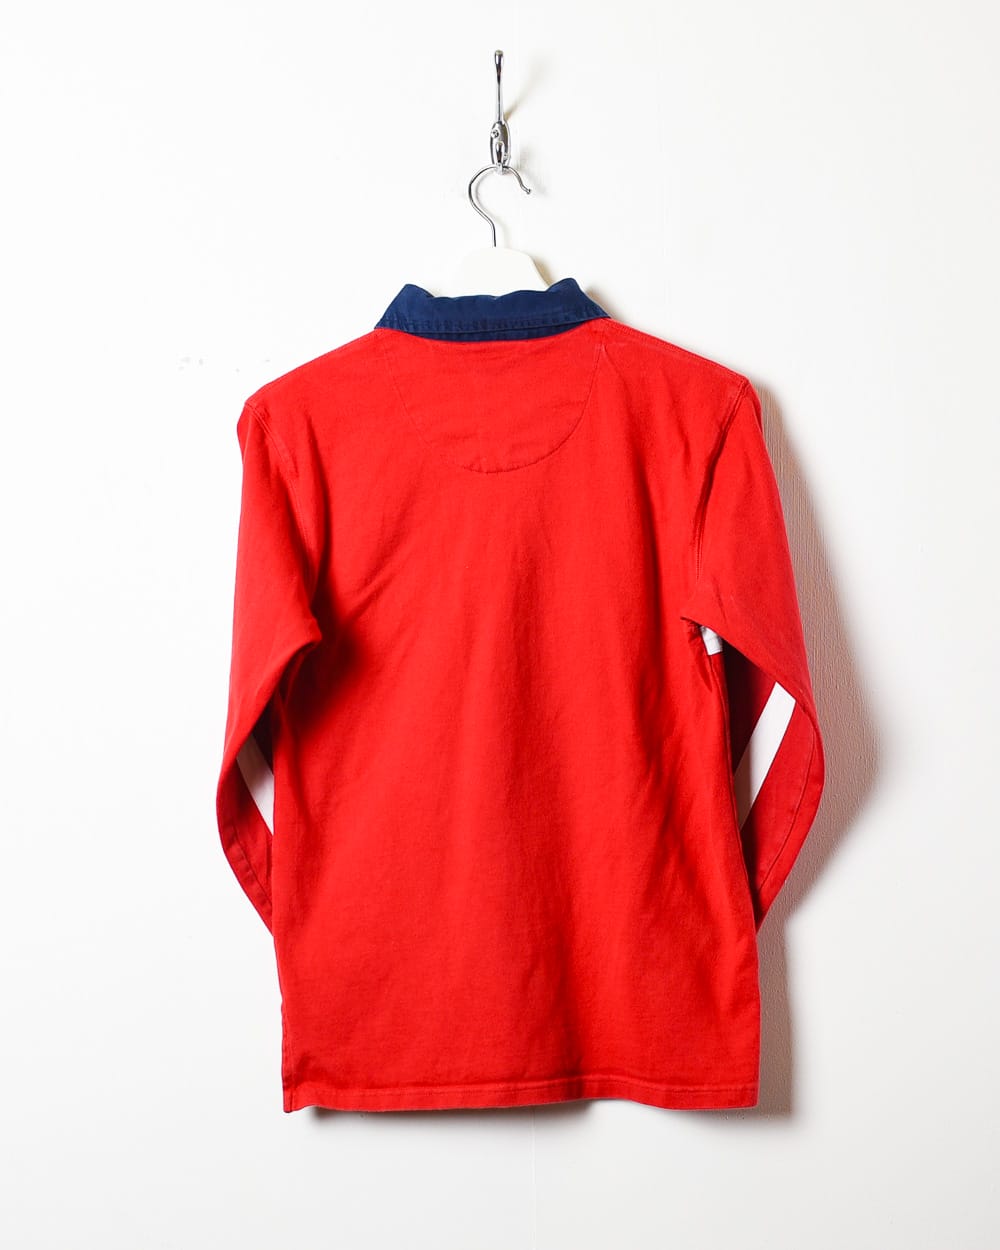 Red Polo Sport Ralph Lauren Rugby Shirt - Small Women's